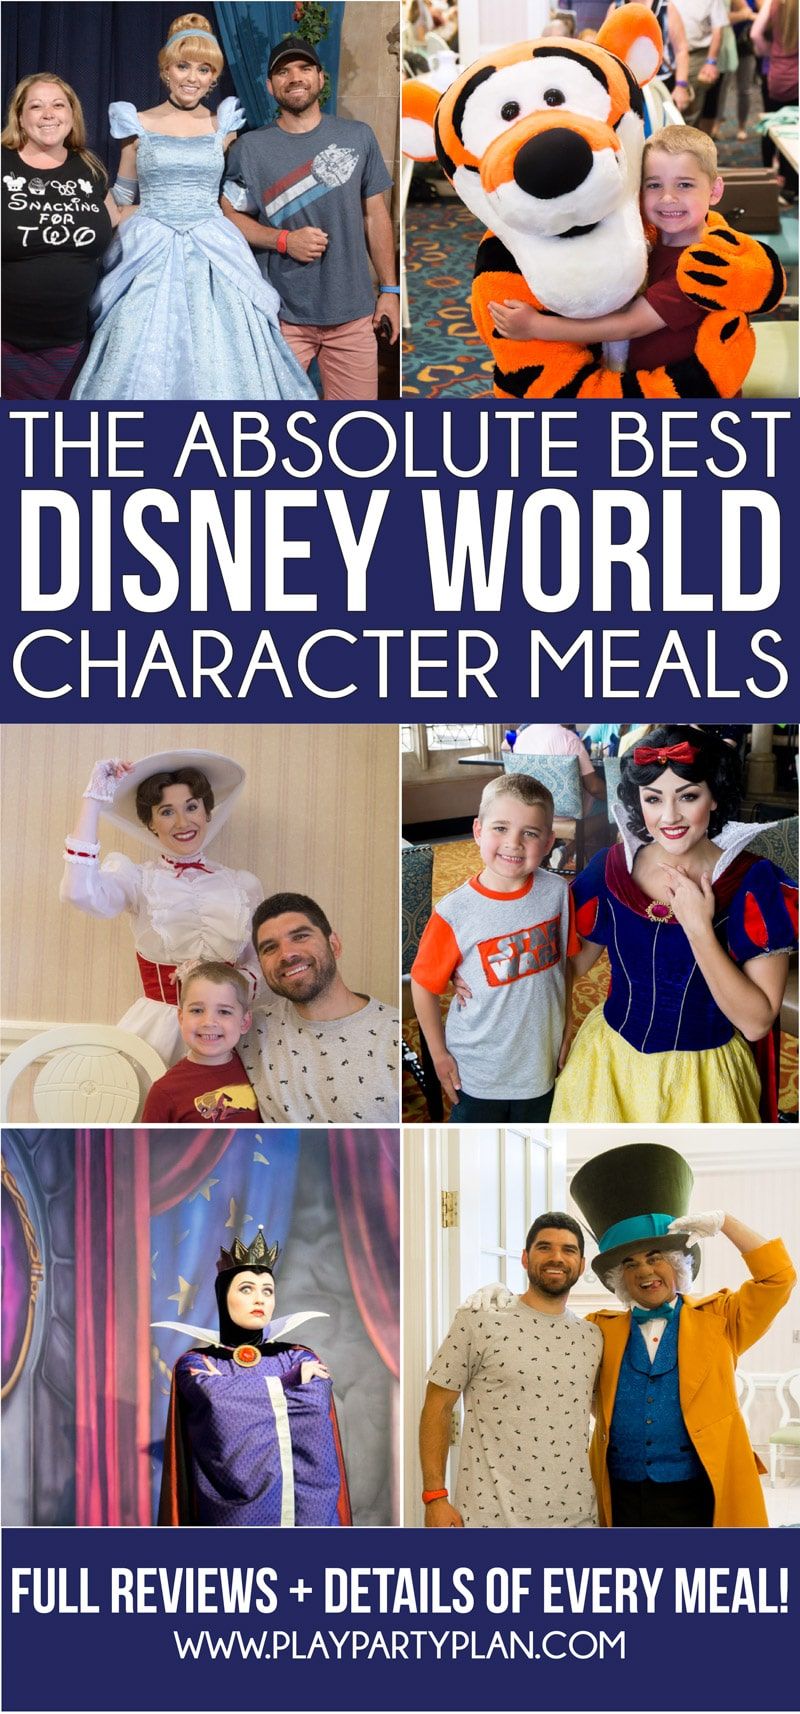 Nejlepší průvodce po stolování postav Disney World aktualizovaný na rok 2019! Seznam nejlepších míst k snídani, ve kterých letoviscích se podávají jídla charakteru, nejlepší pro rodiny s dětmi a další! A individuální recenze každého jídla Disneyho charakteru!